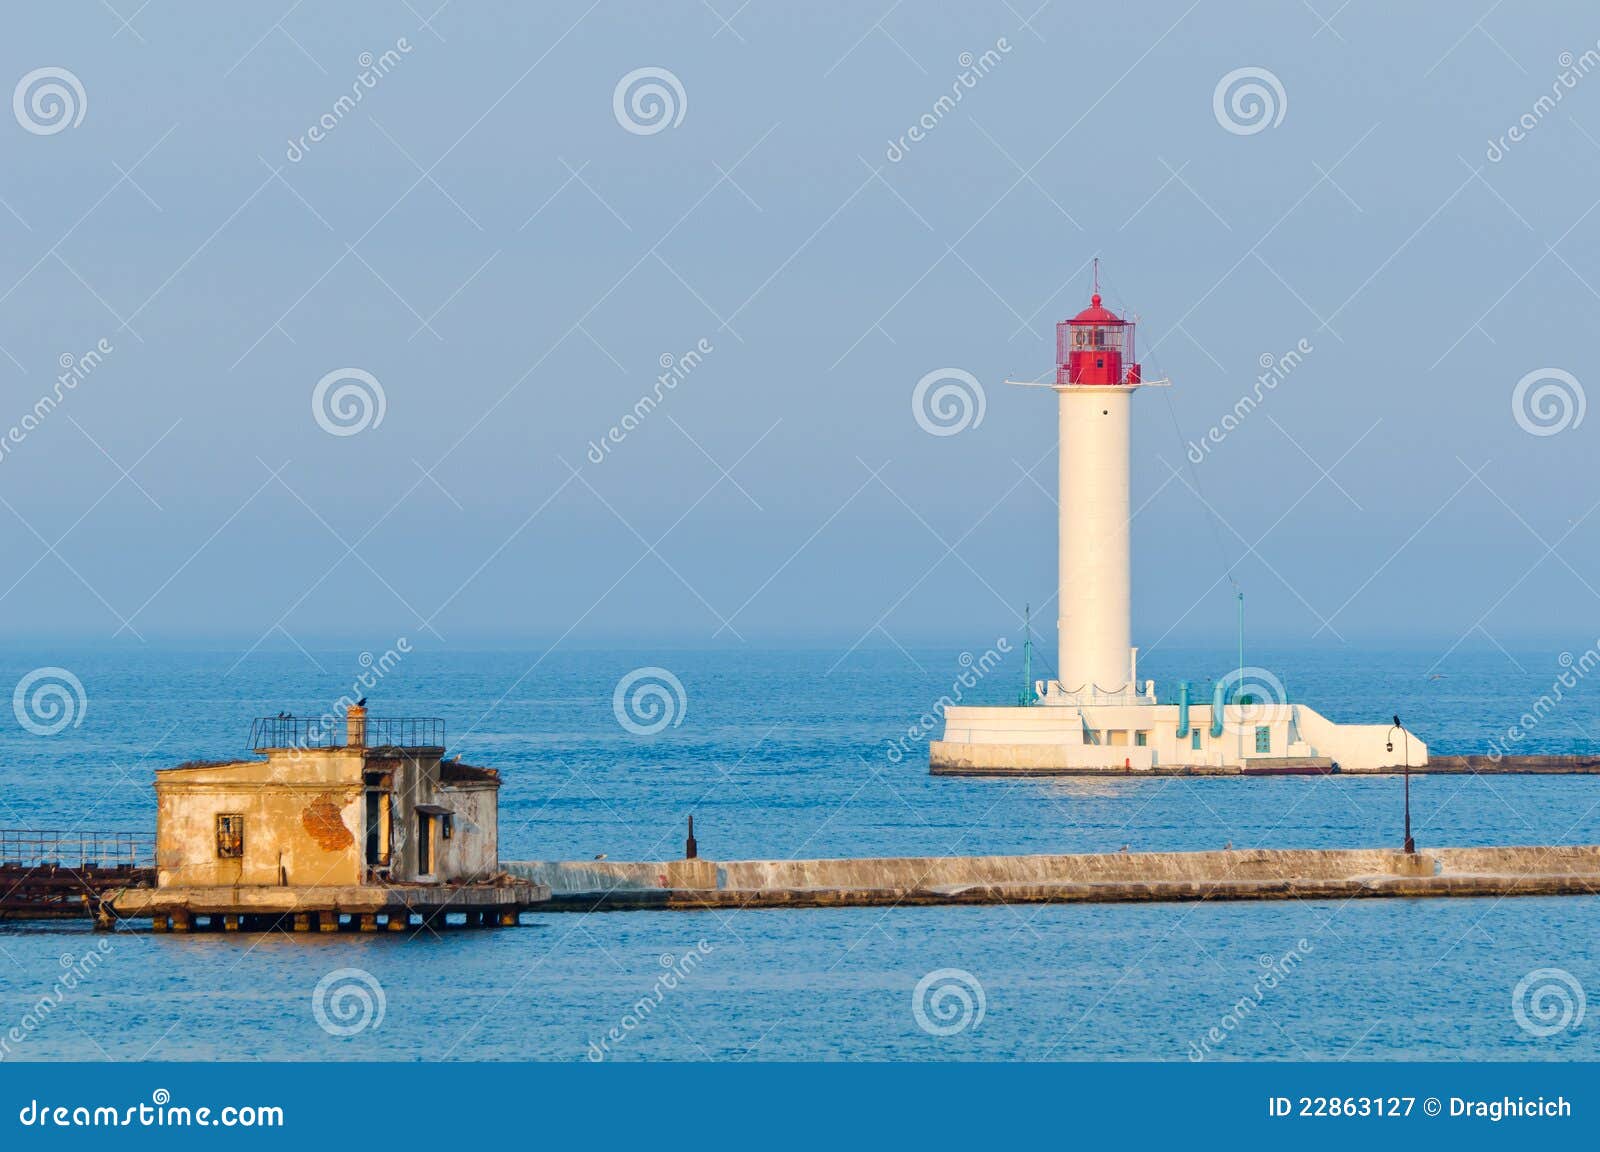 lighthouse in odessa ukraine